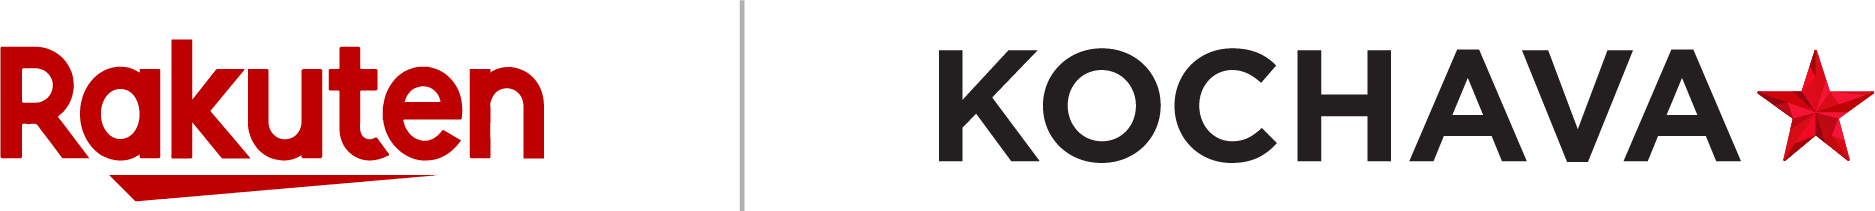 Rakuten and Kochava logos